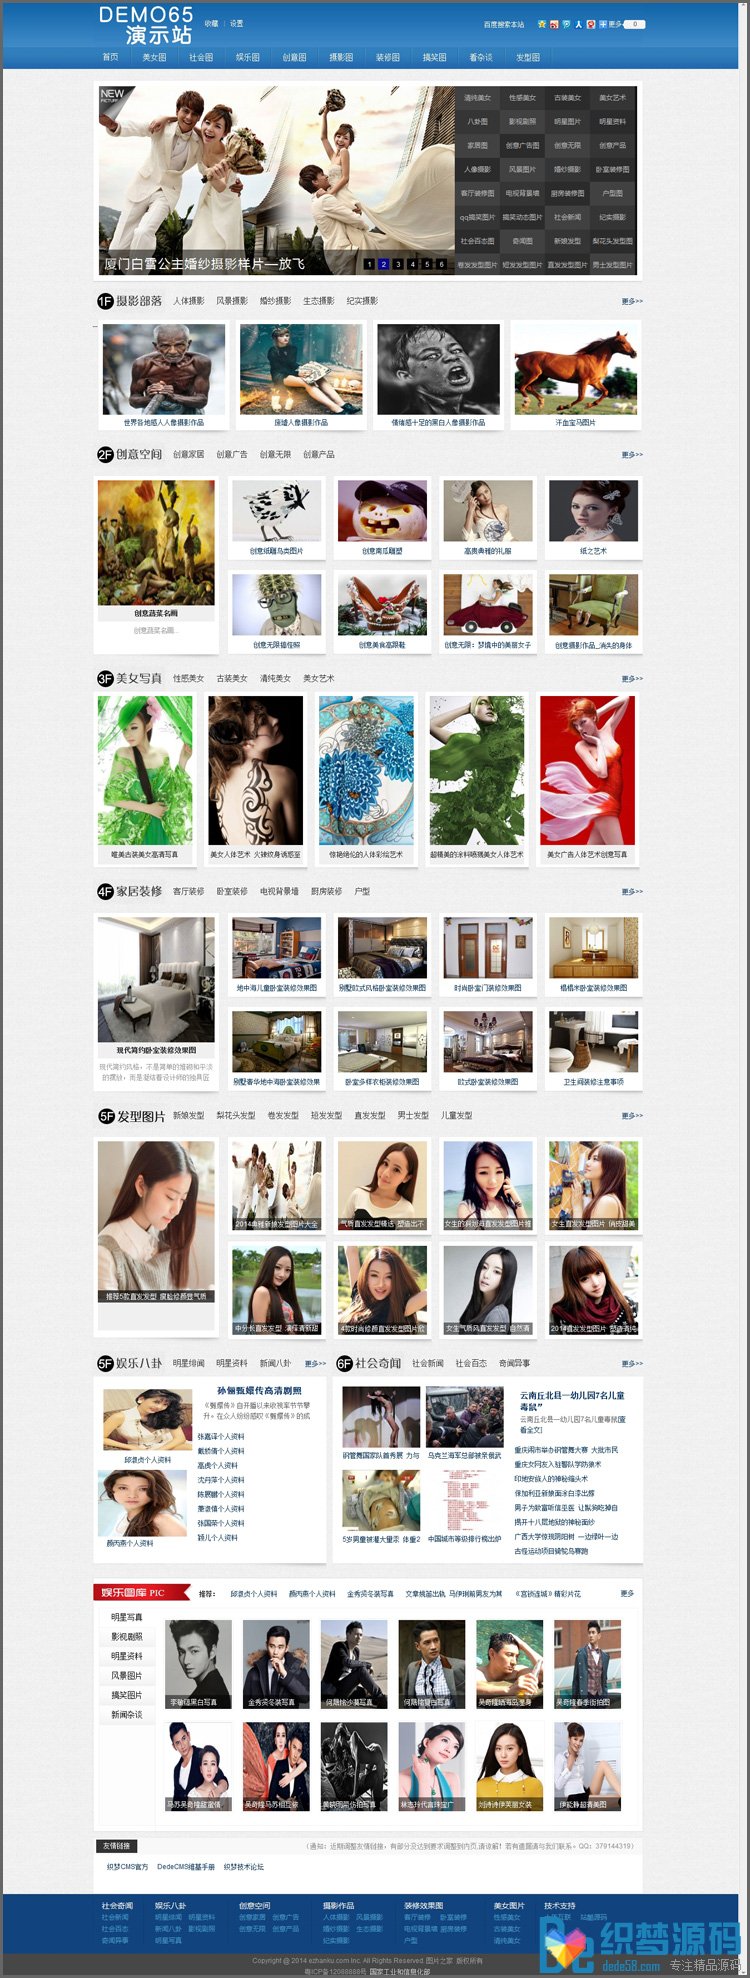 图片资讯站织梦源码 图片展示网站模板免费下载